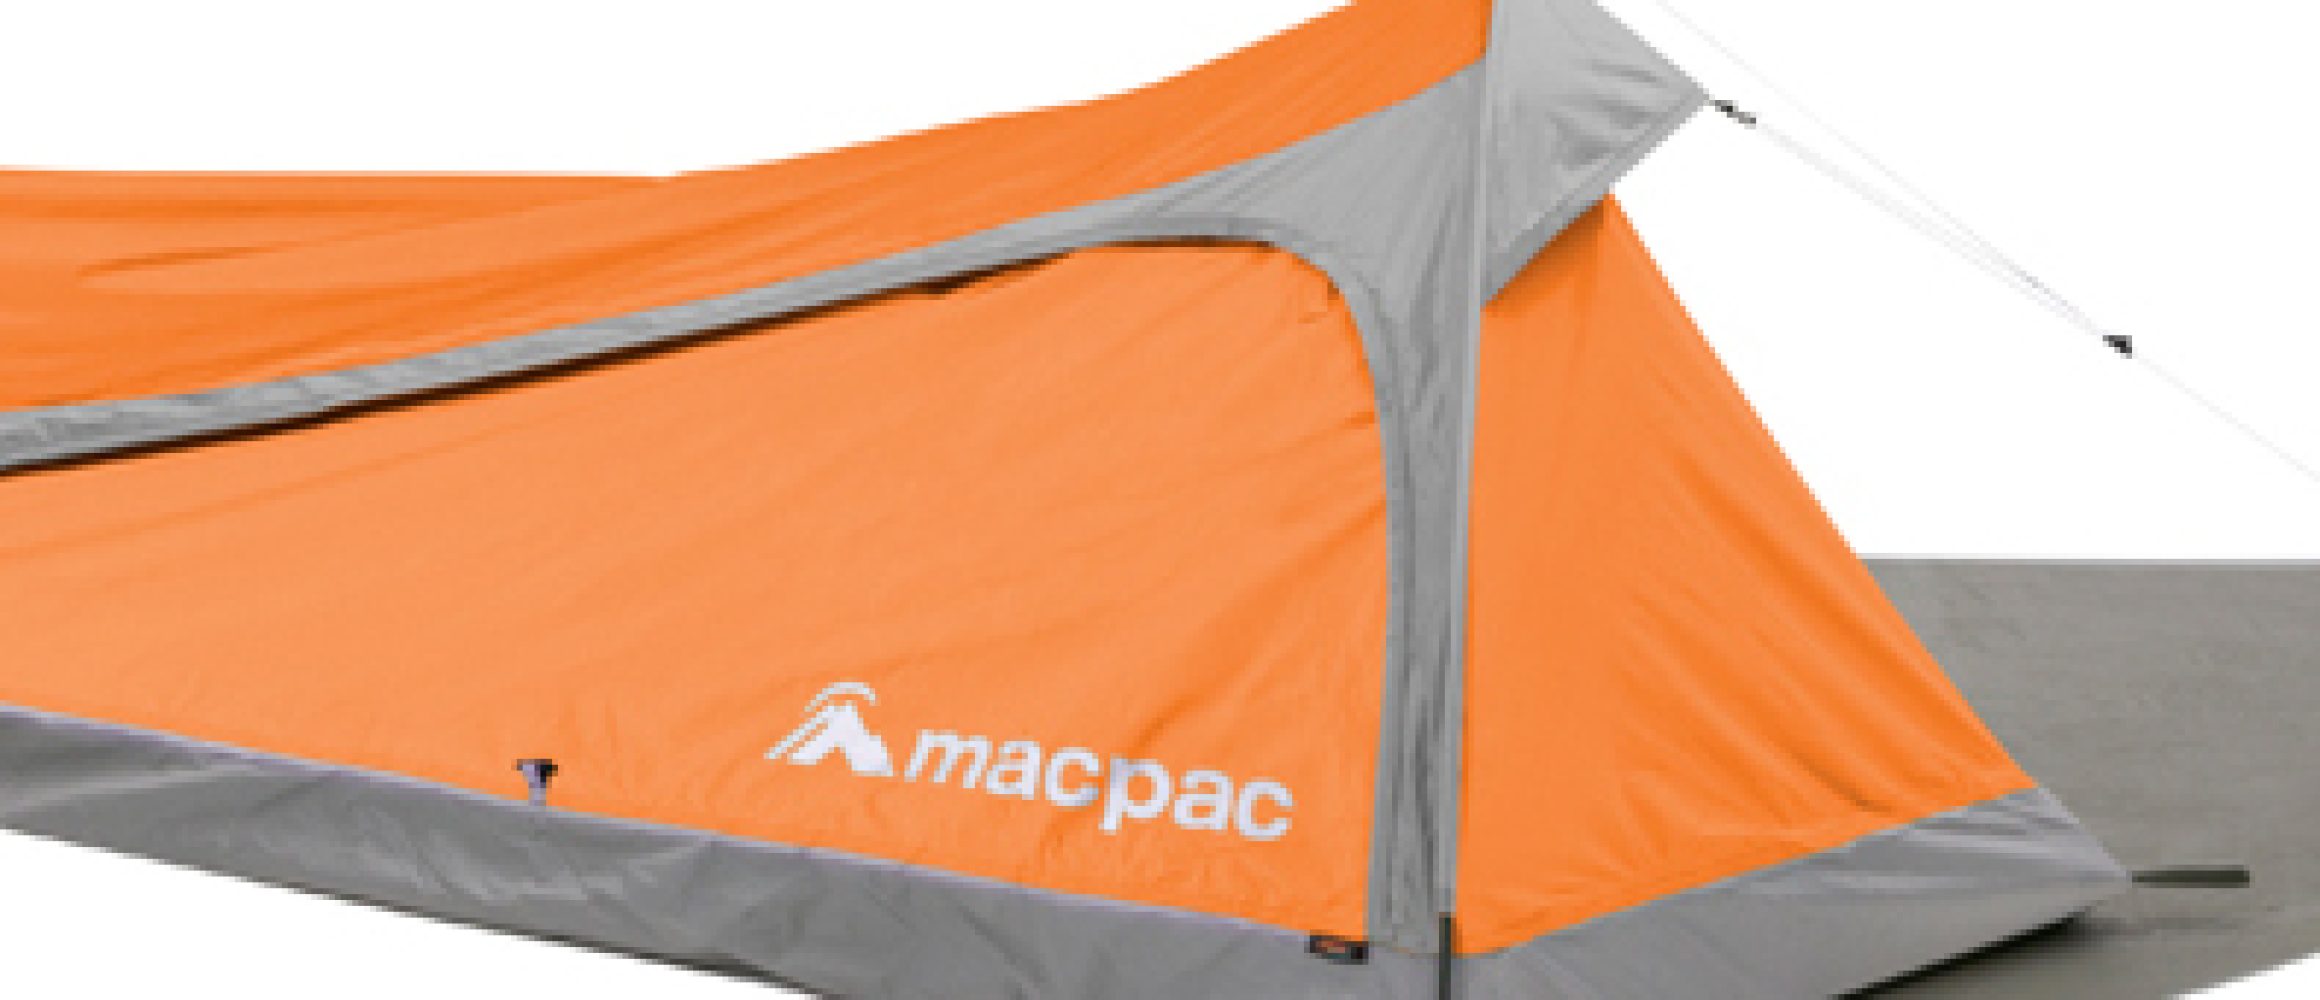 あのマックパックのテントが上陸！ ソロキャンパー必見のミニマルな2タイプがラインナップ。